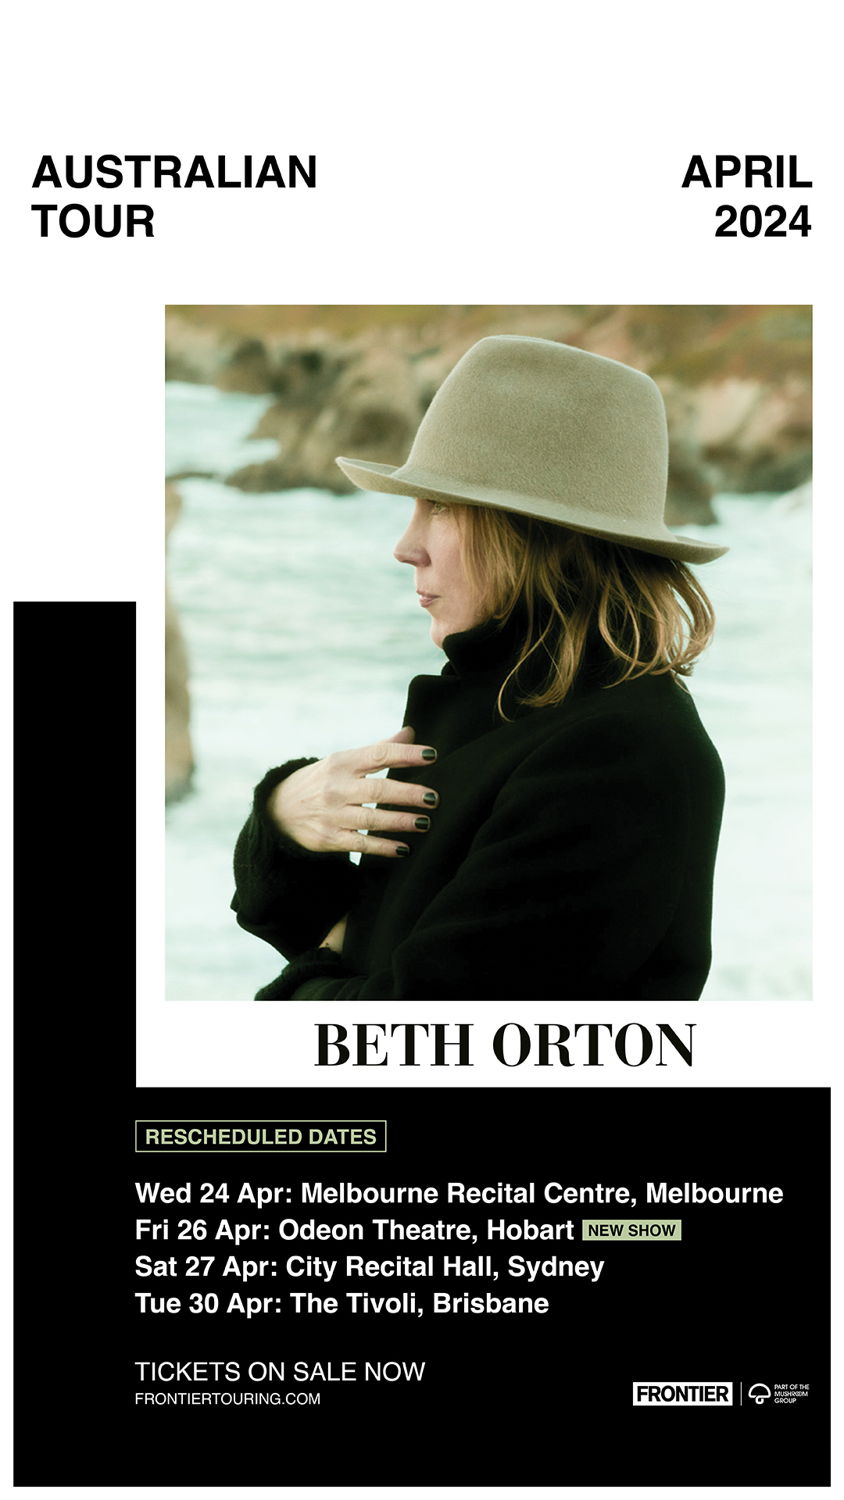 Beth Orton Tour Artwork 1080x1920